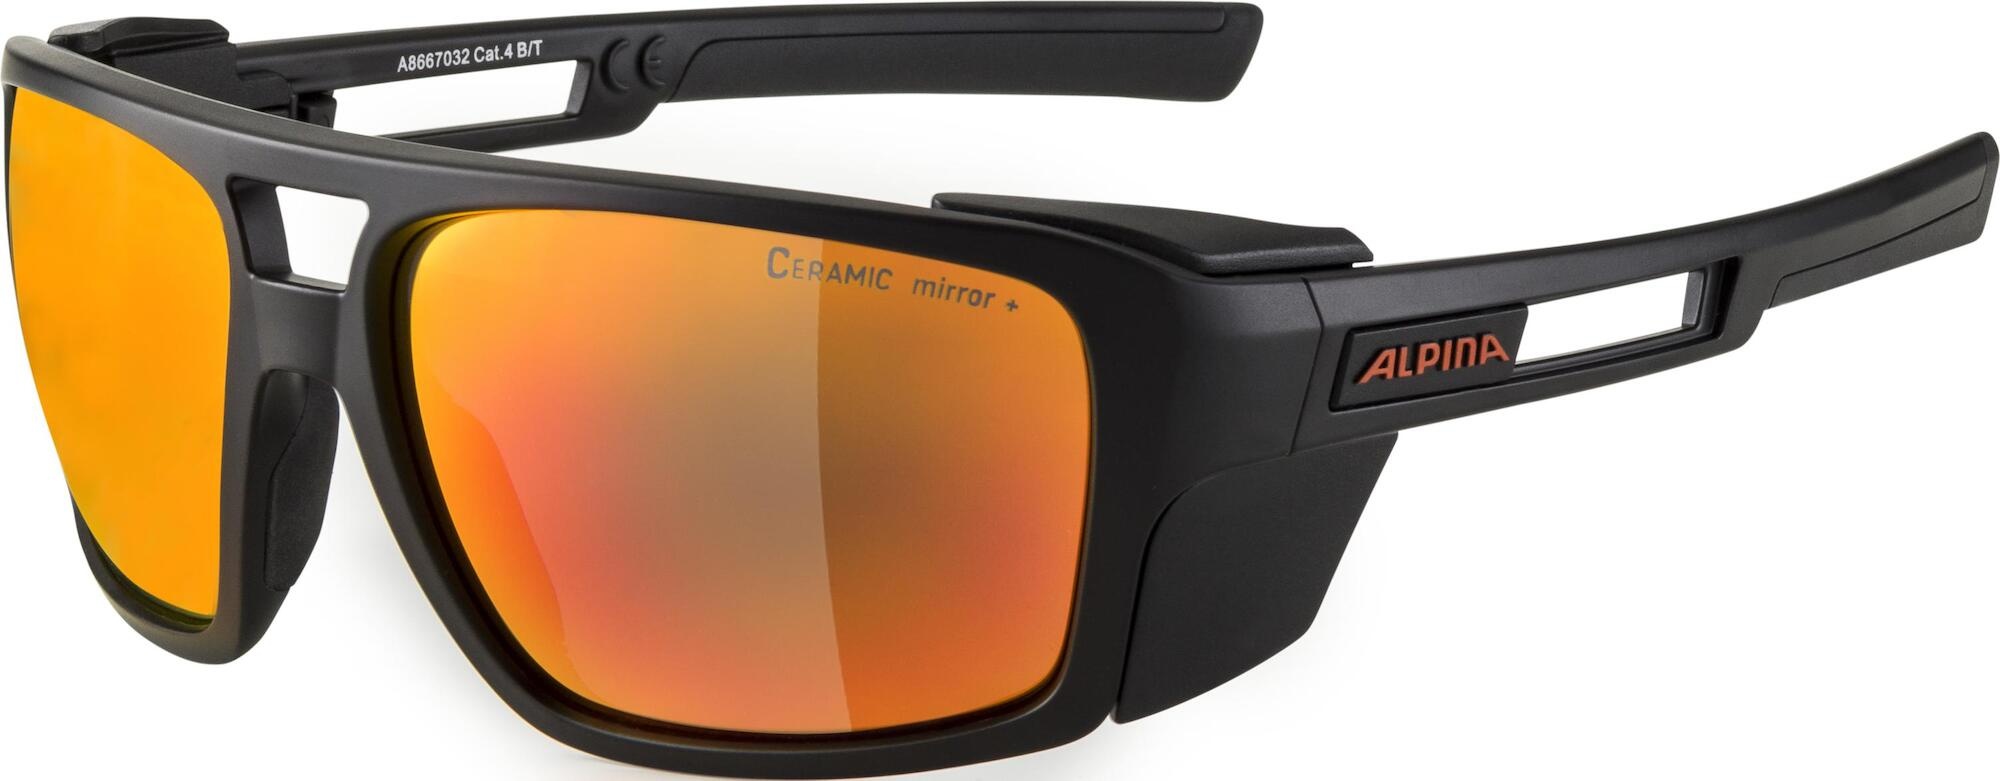 Skywalsh CM Brille schwarz 2021 Brillen Test & Preisvergleich